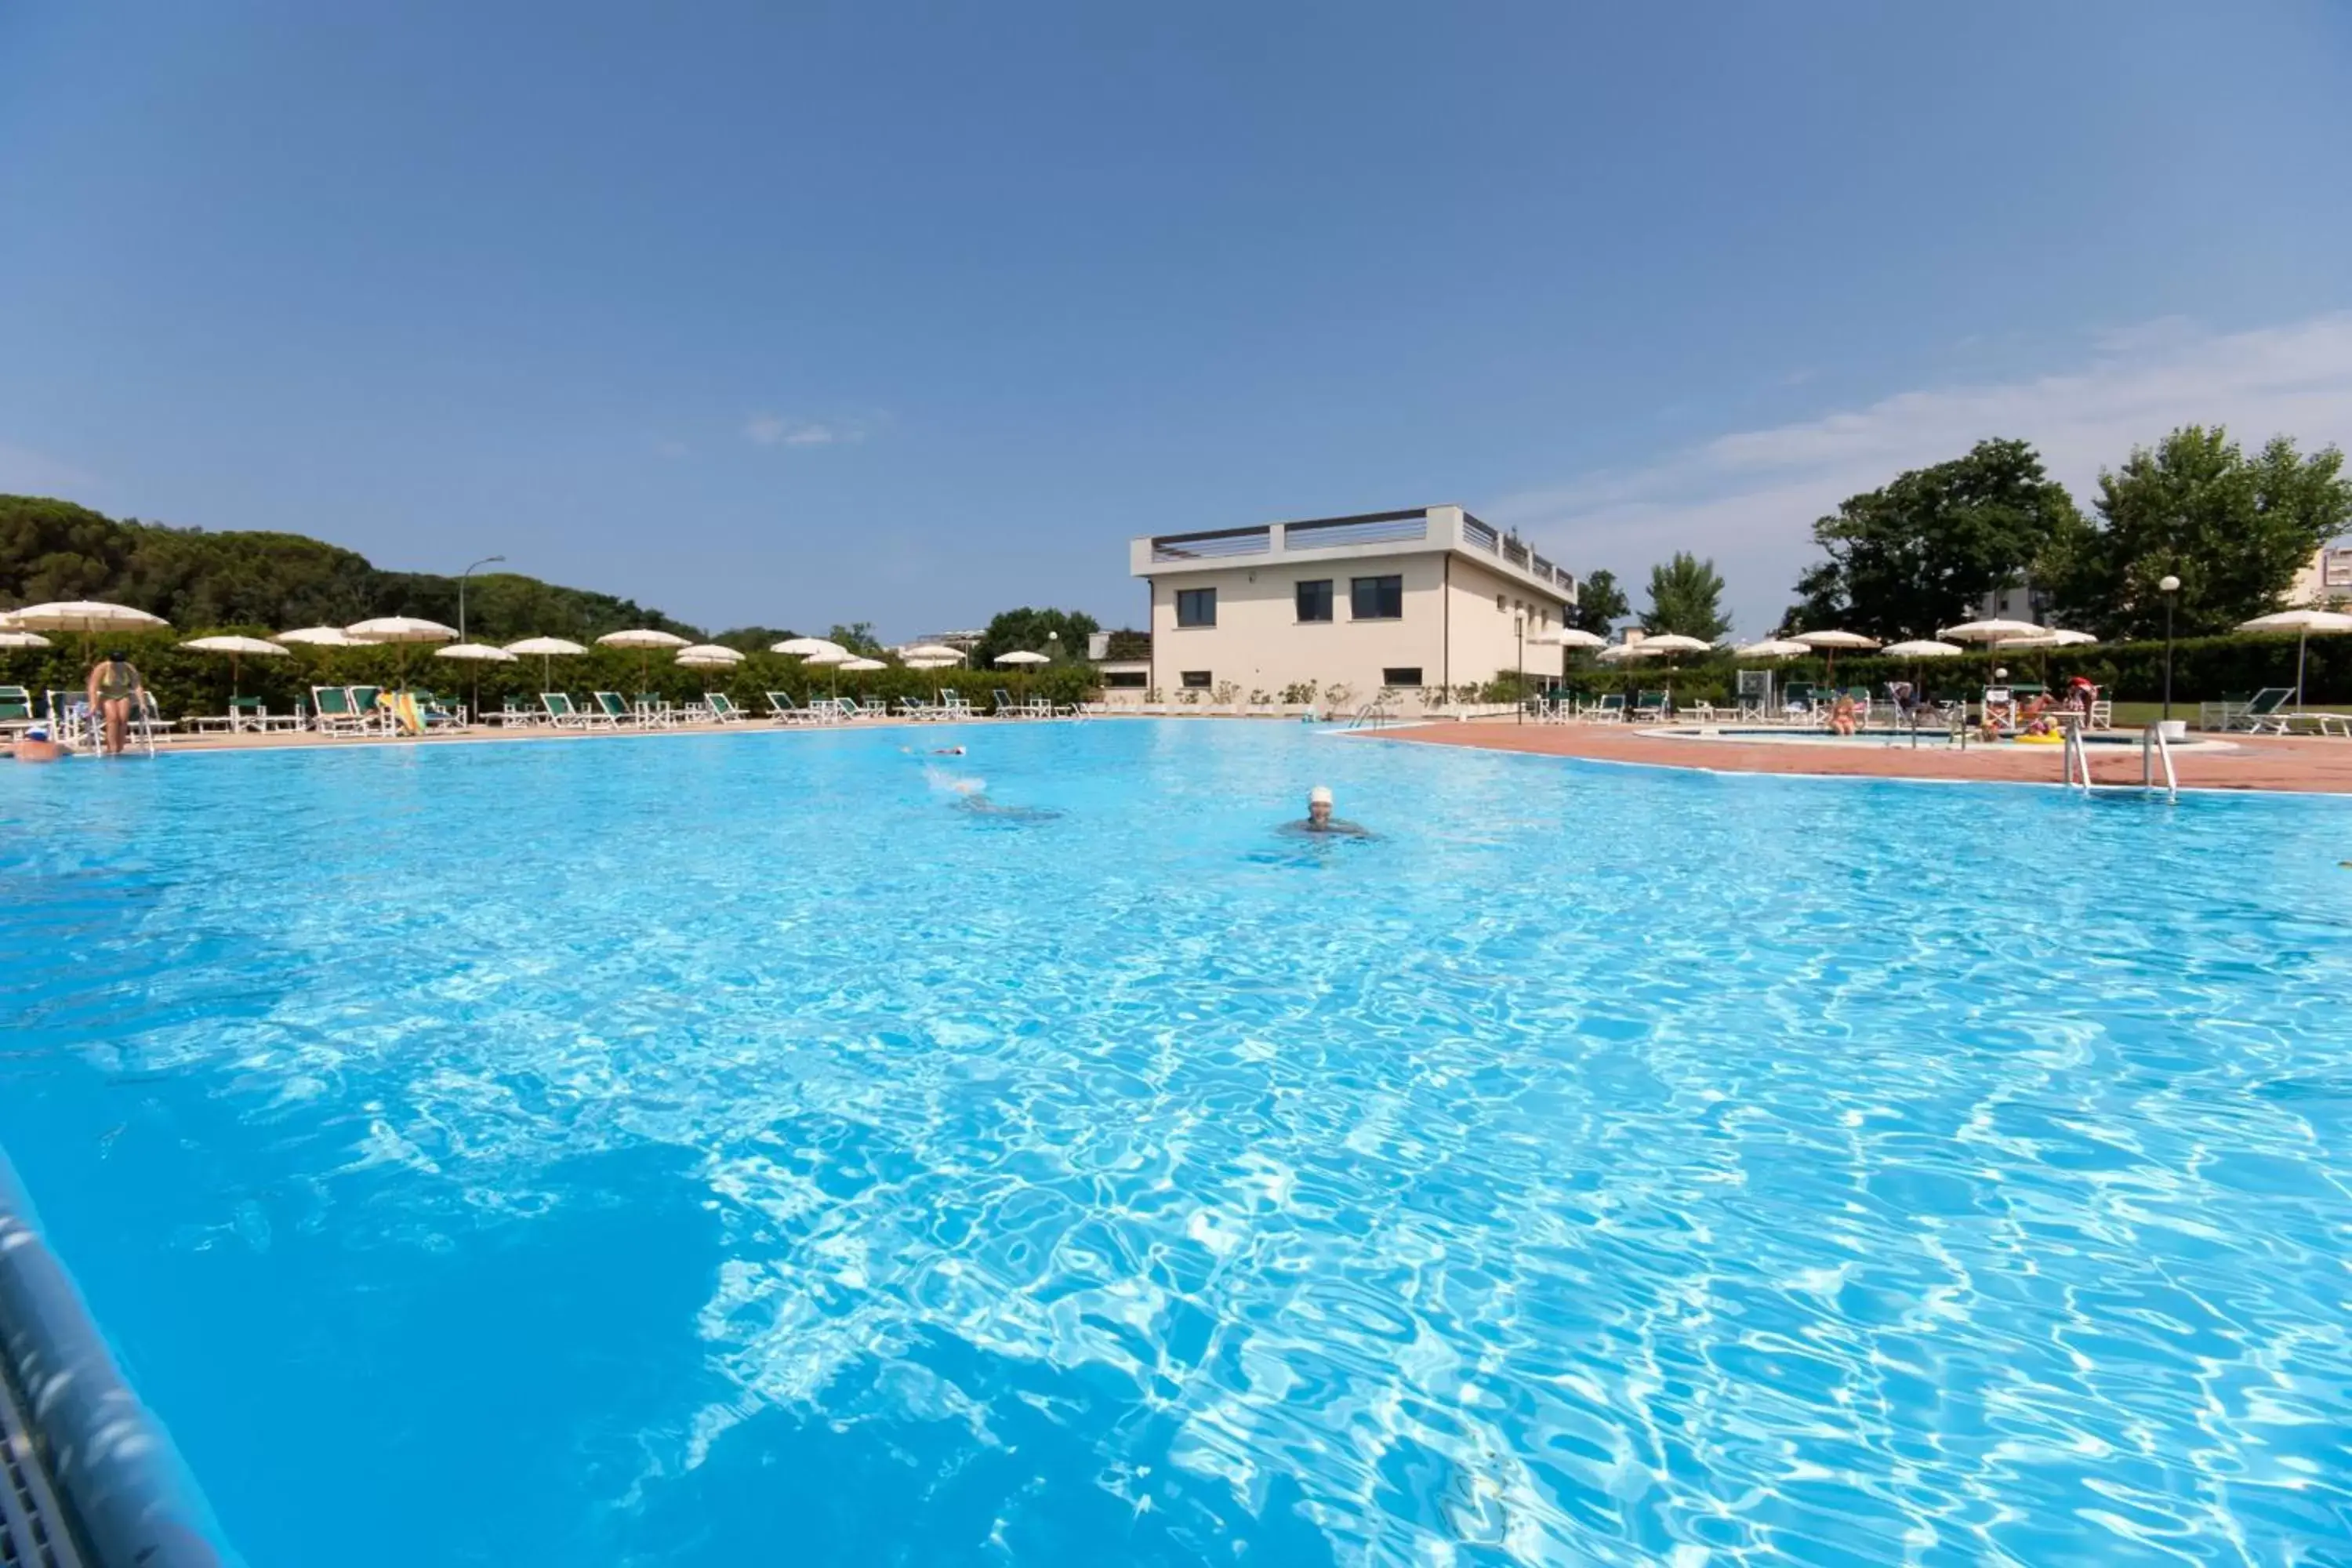 Swimming Pool in Le Residenze di Santa Costanza - Mirto/Corbezzolo